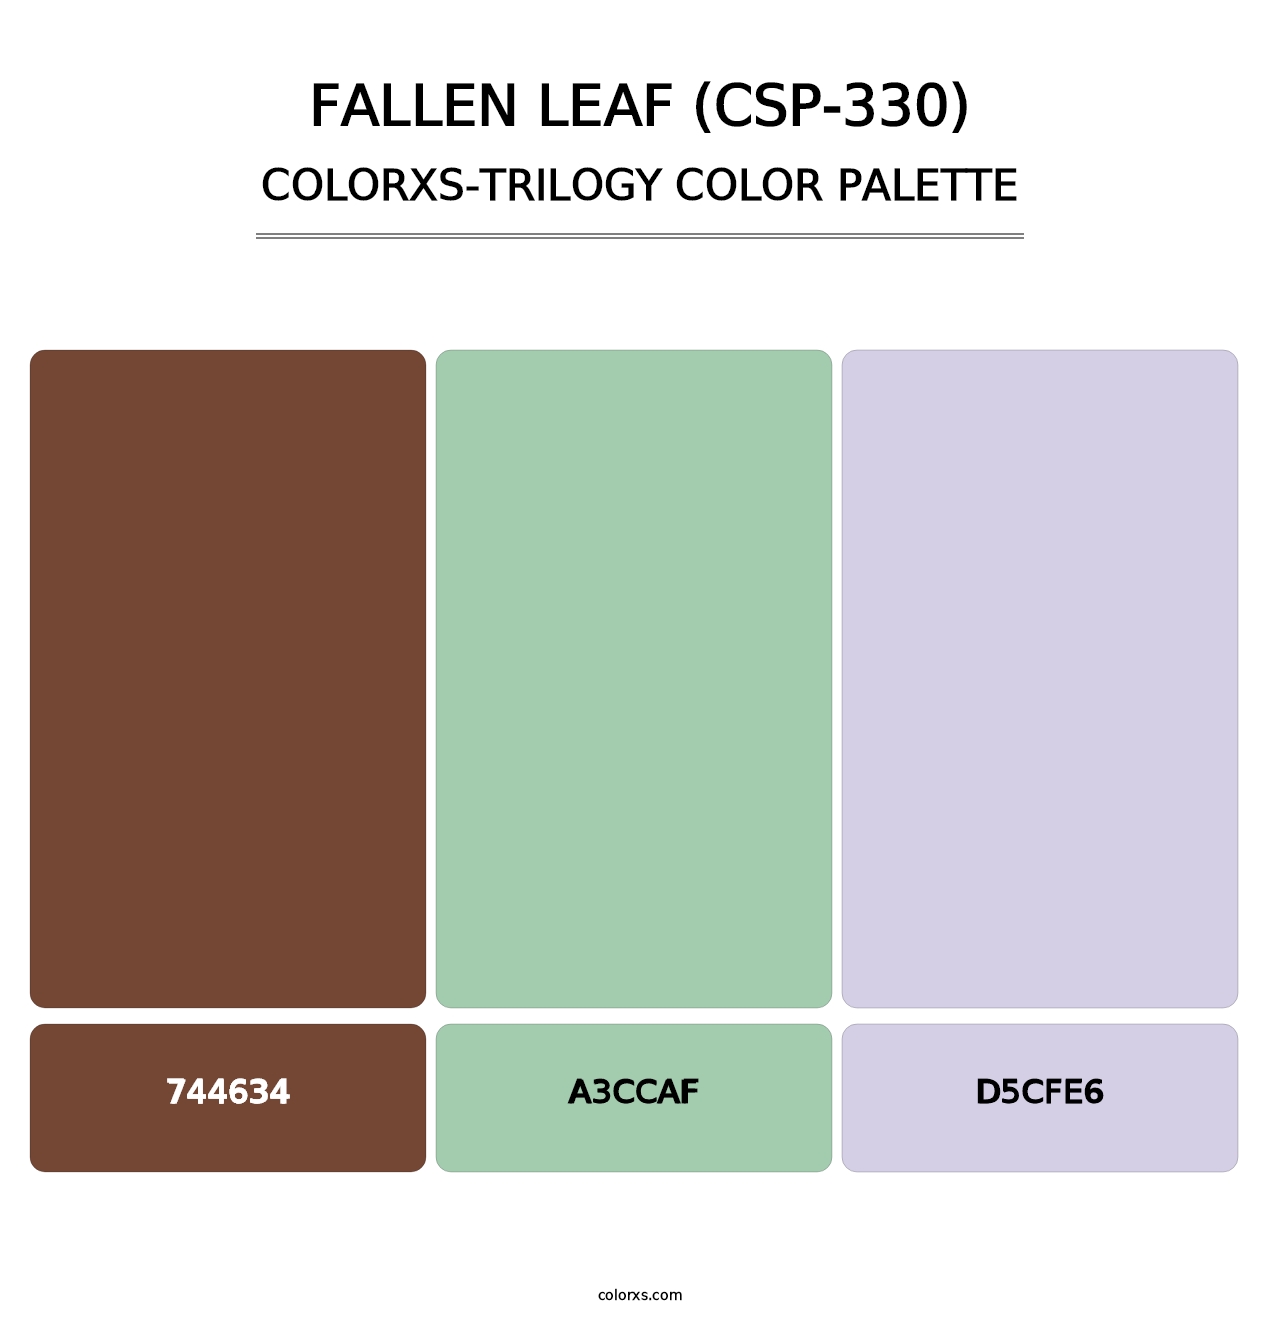 Fallen Leaf (CSP-330) - Colorxs Trilogy Palette